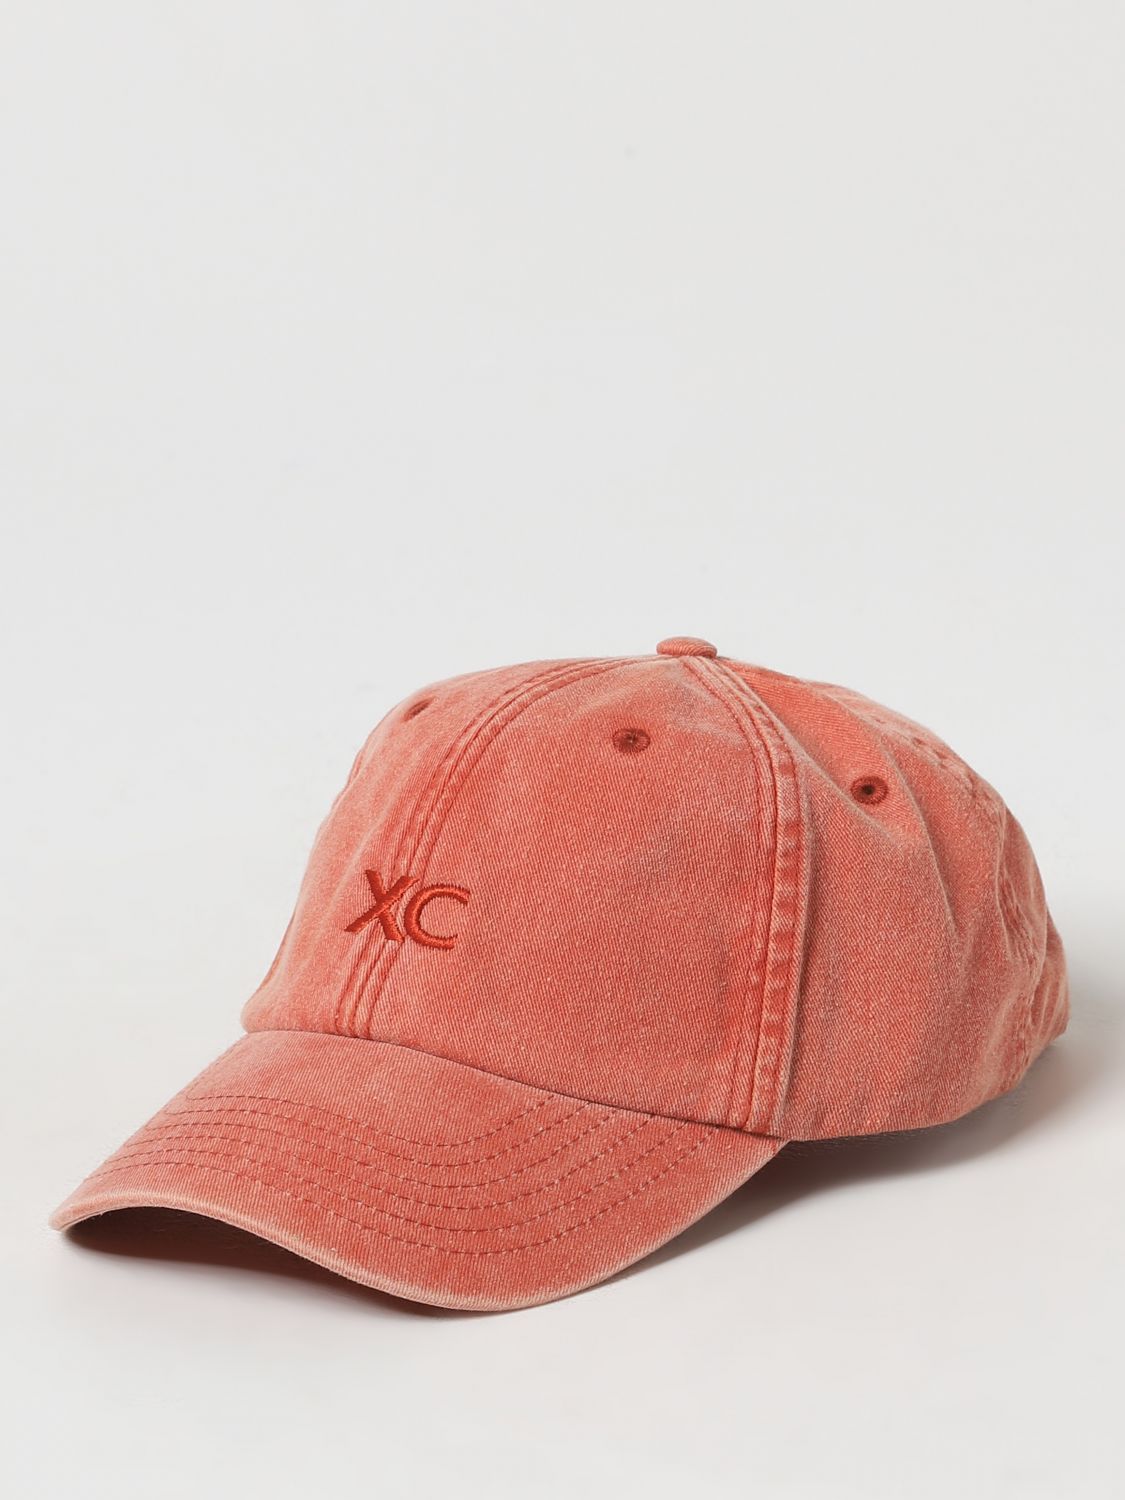 Xc Hat XC Men color Orange